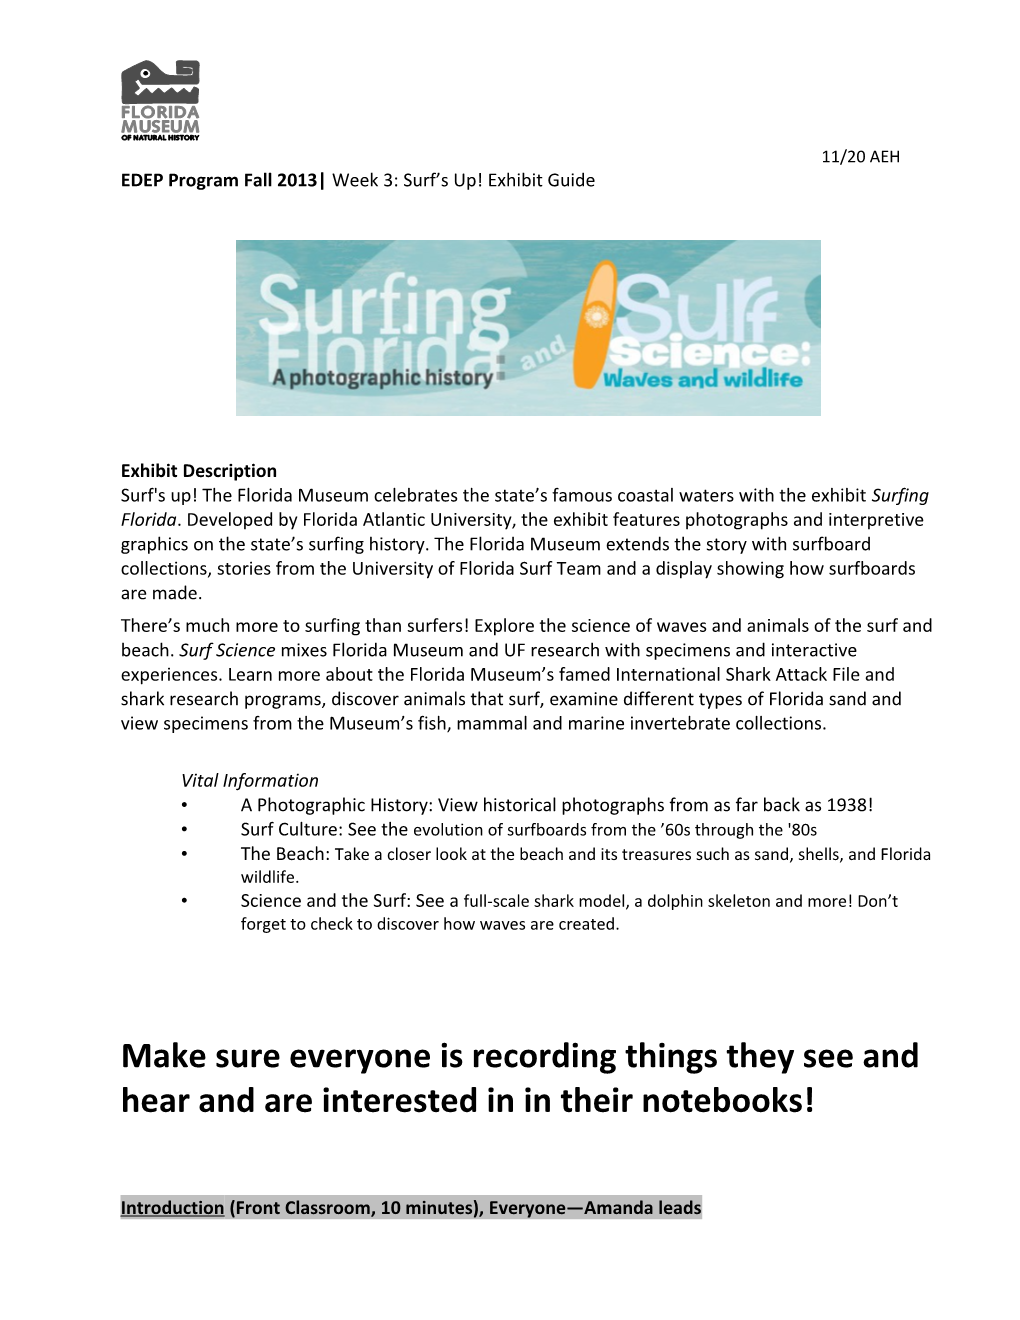 EDEP Program Fall 2013 Week 3: Surf S Up! Exhibit Guide